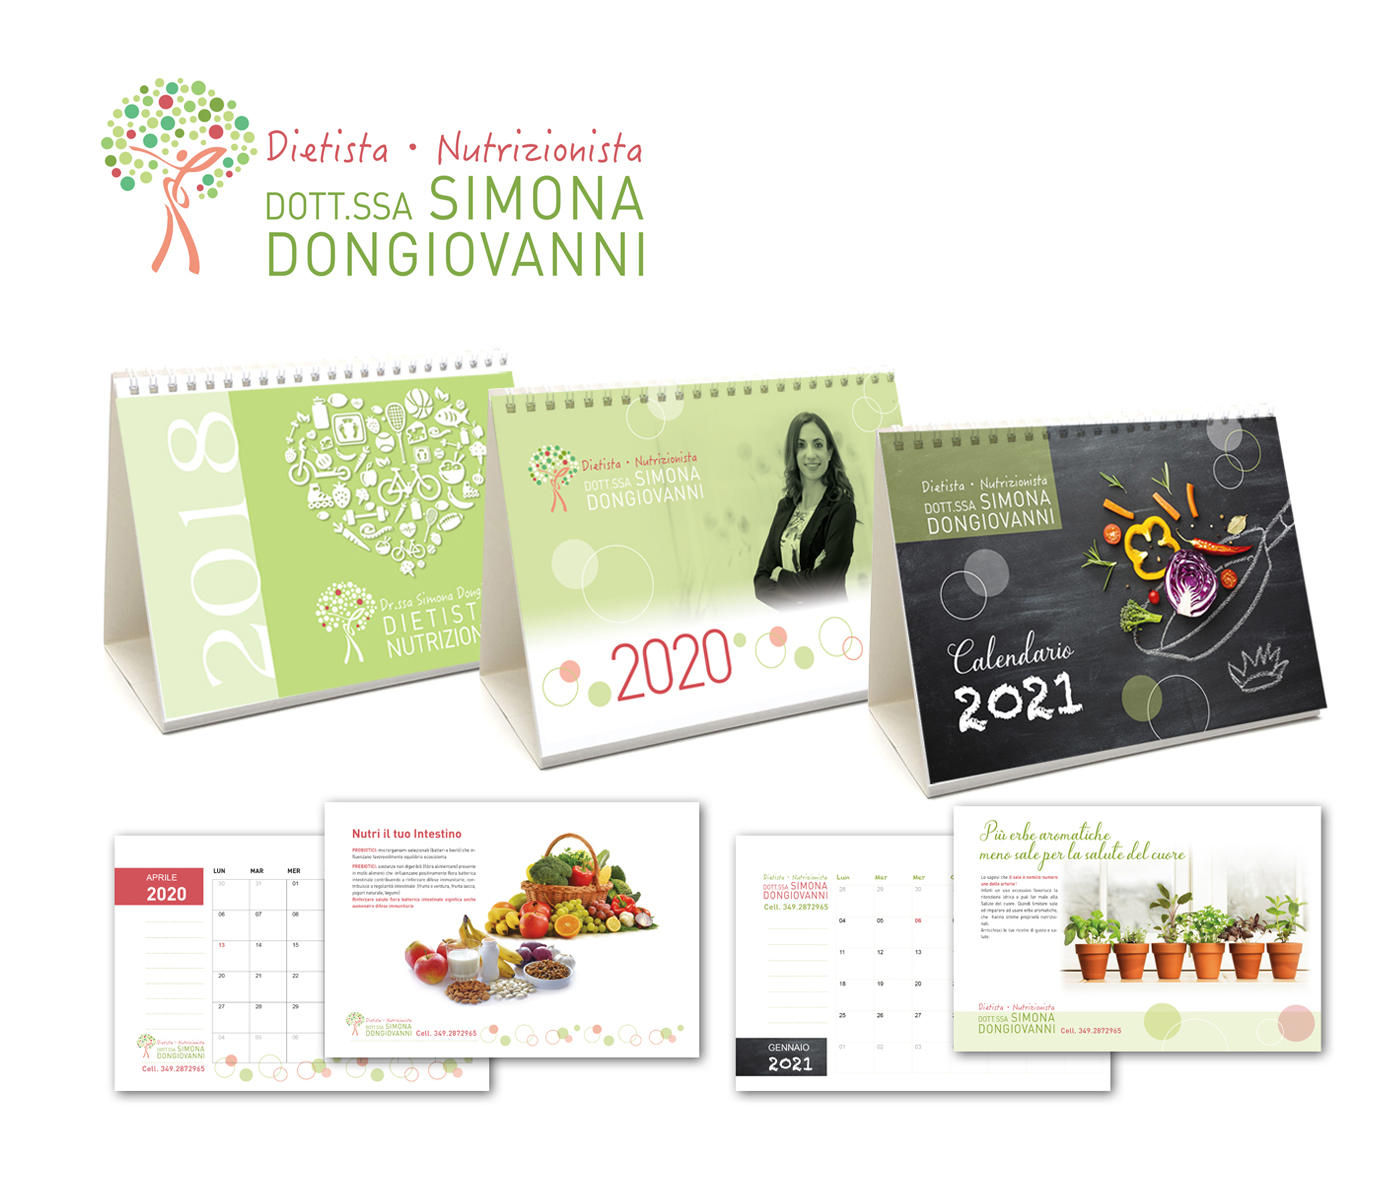 Dongiovanni Dietista Nutrizionista - Calendari